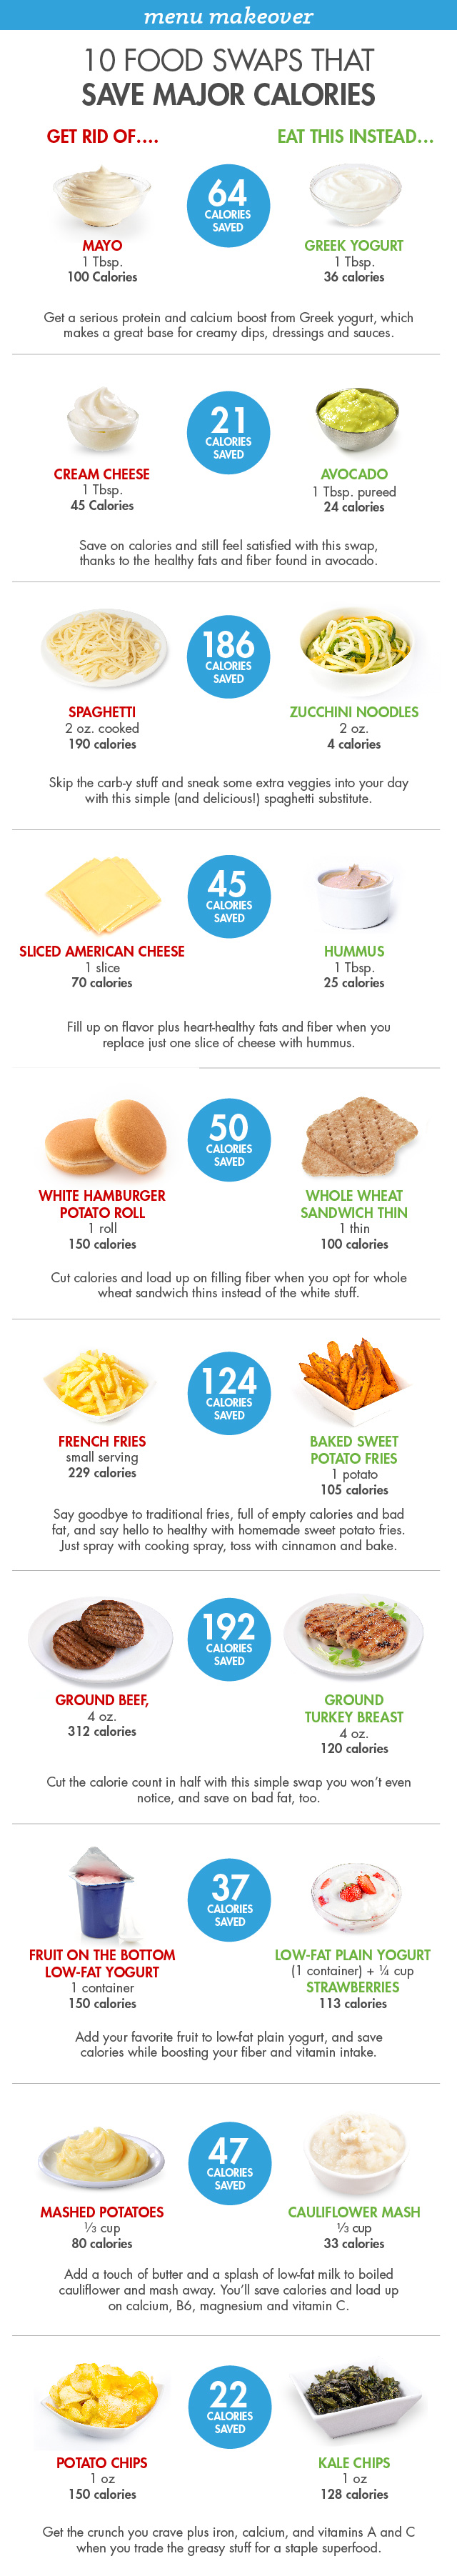 save calories